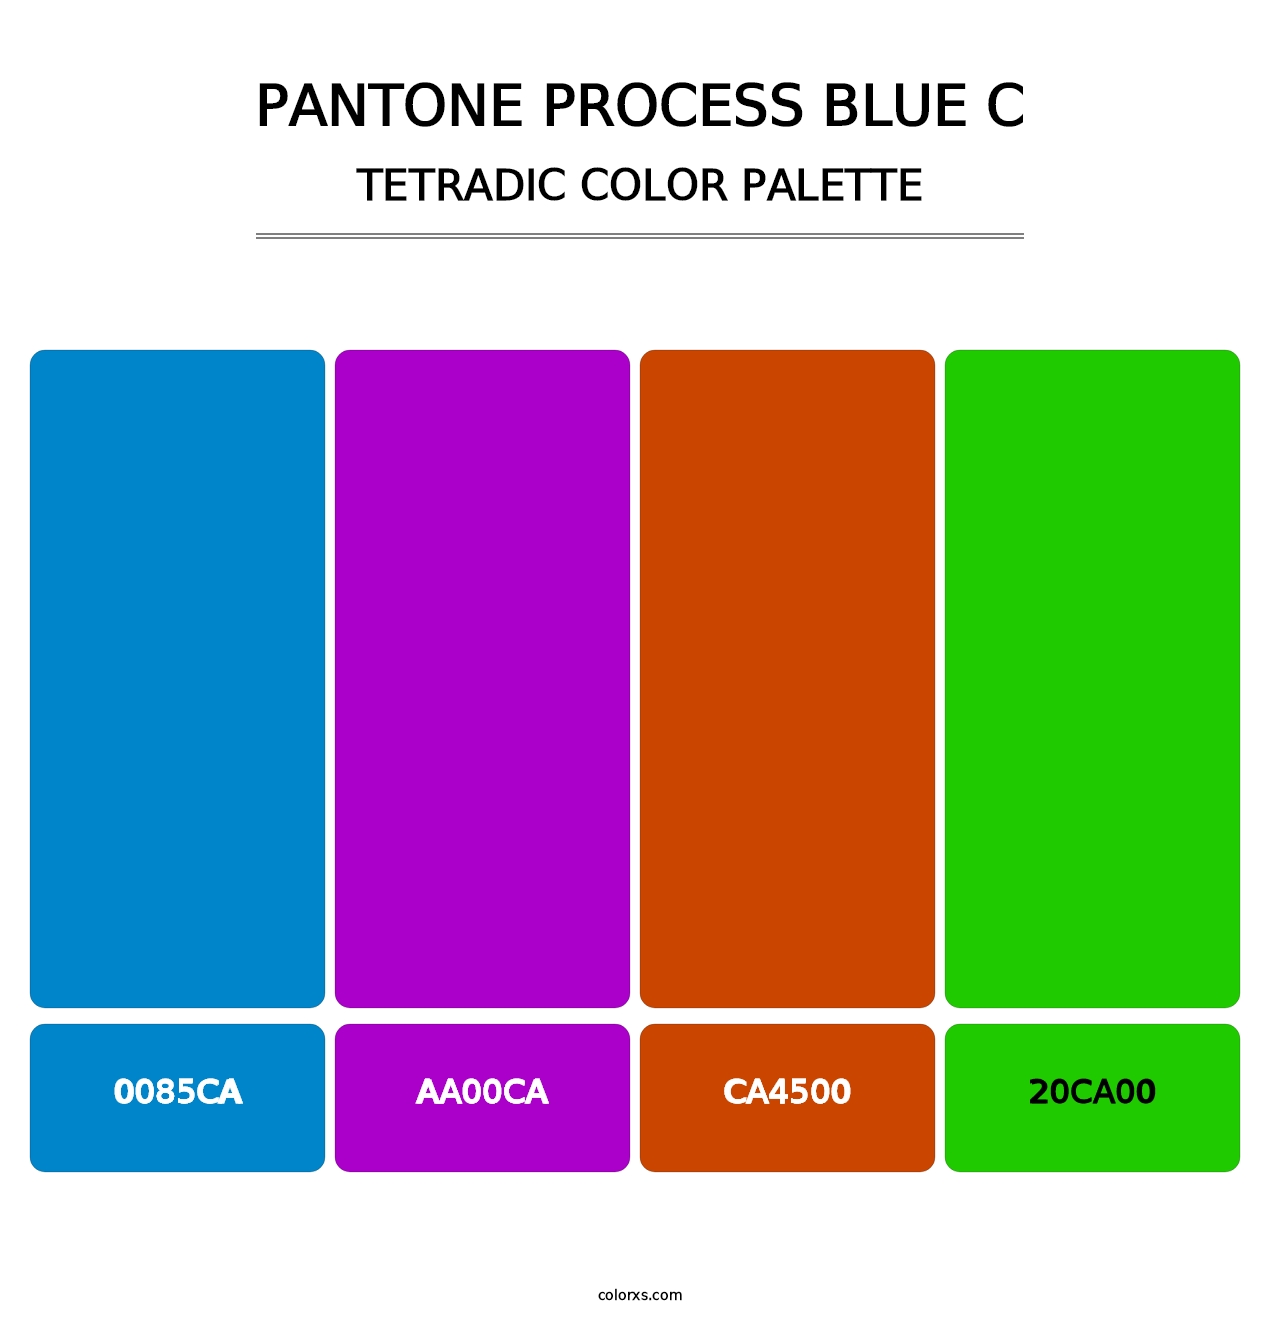 PANTONE Process Blue C - Tetradic Color Palette